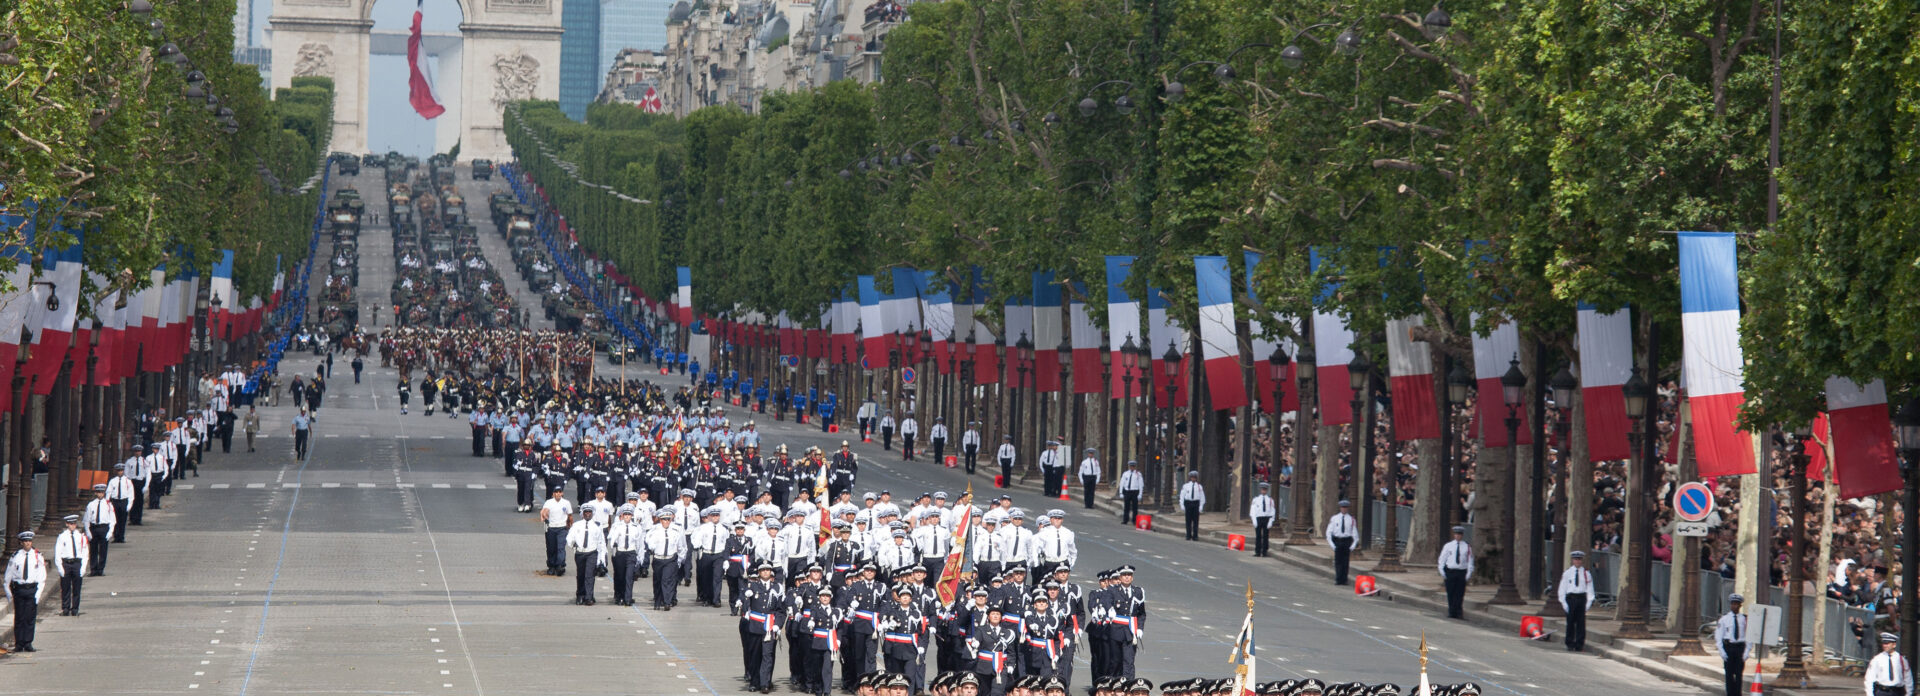 Feire Bastille Day i Paris Frankrikes nasjonaldag